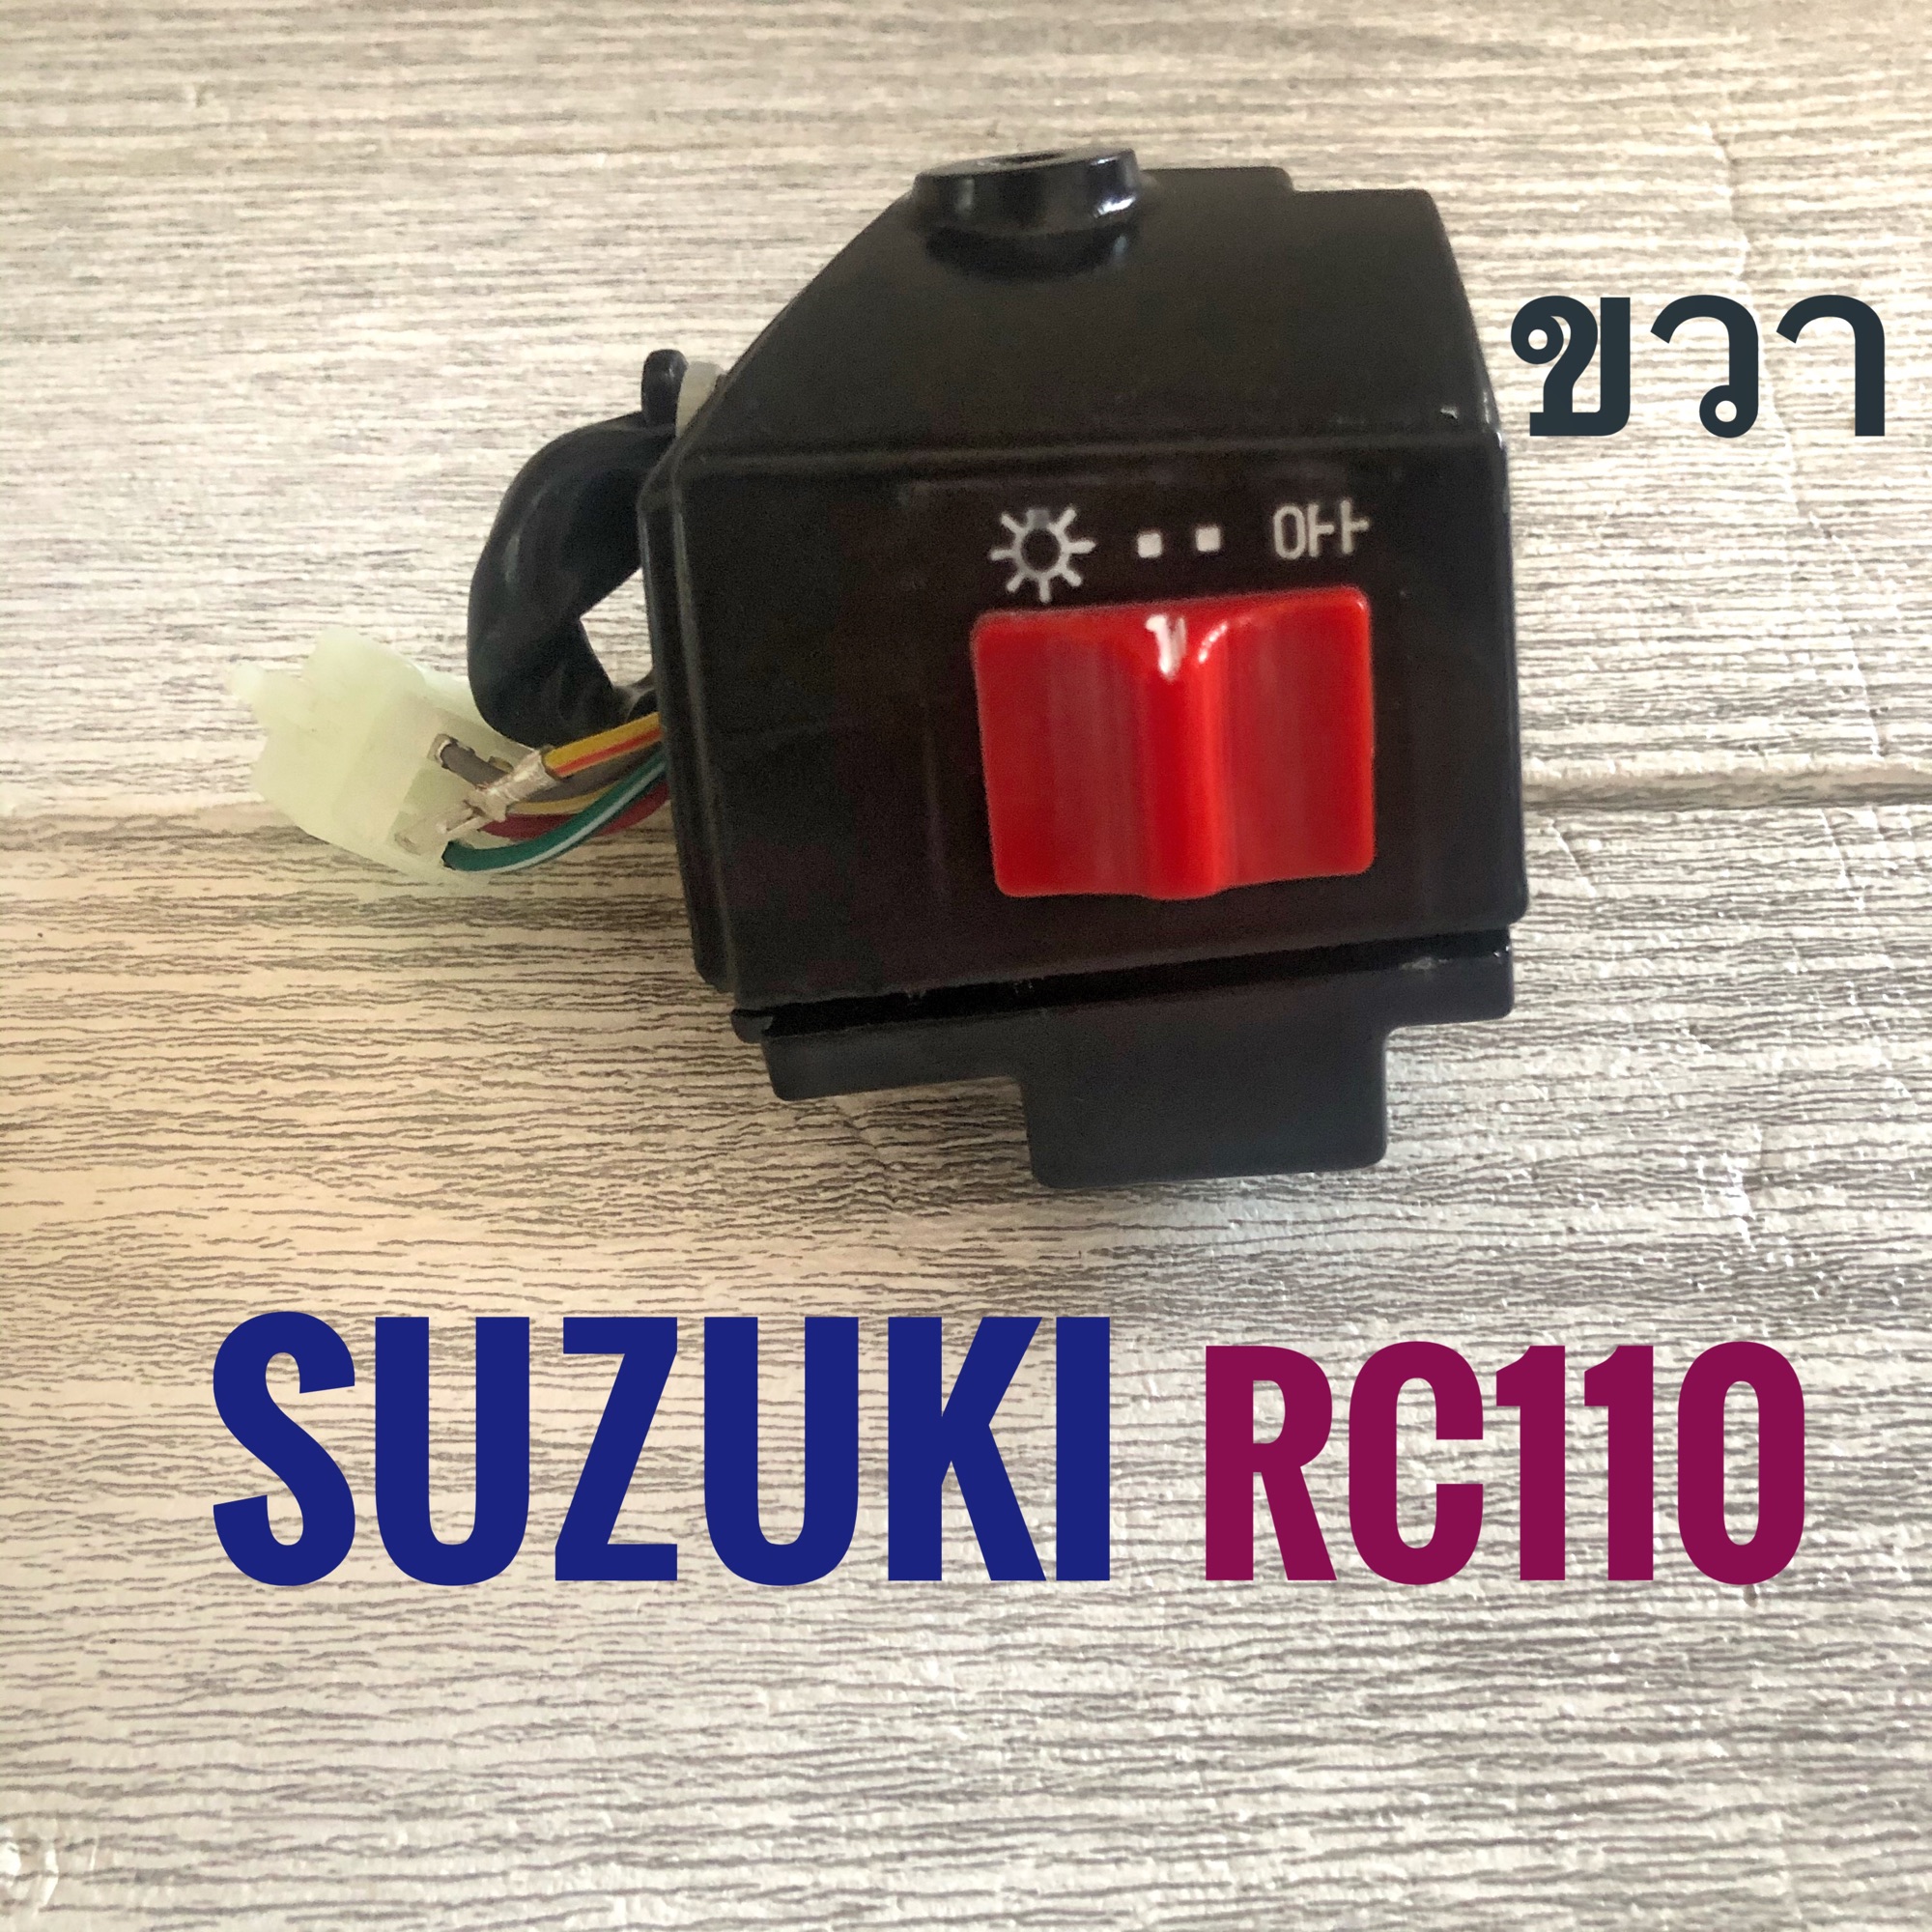 สวิทช์แฮนด์ ขวา SUZUKI RC110 ( ซูซูกิ อาร์ซี 110 ) สวิตช์ แฮรด์ มอเตอร์ไซค์